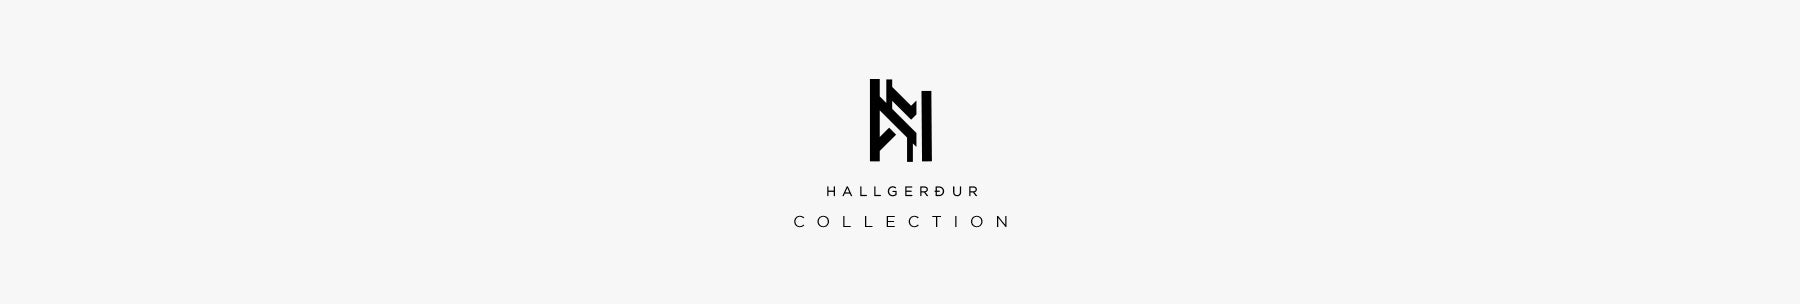 Hallgerður - Collection